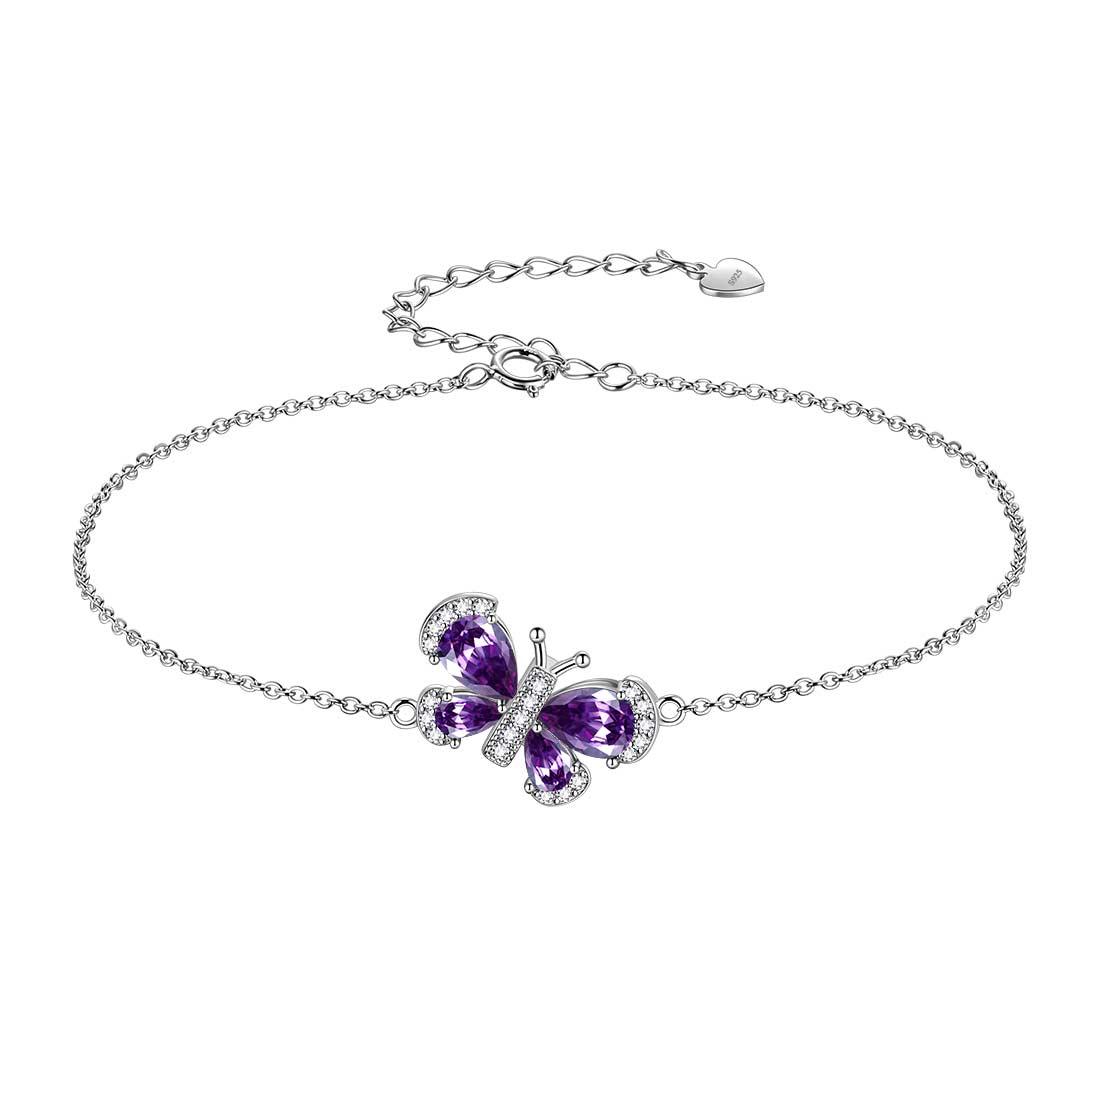 Butterfly Bracelet Birthstone February Amethyst Crystal Link - Bracelet - Aurora Tears